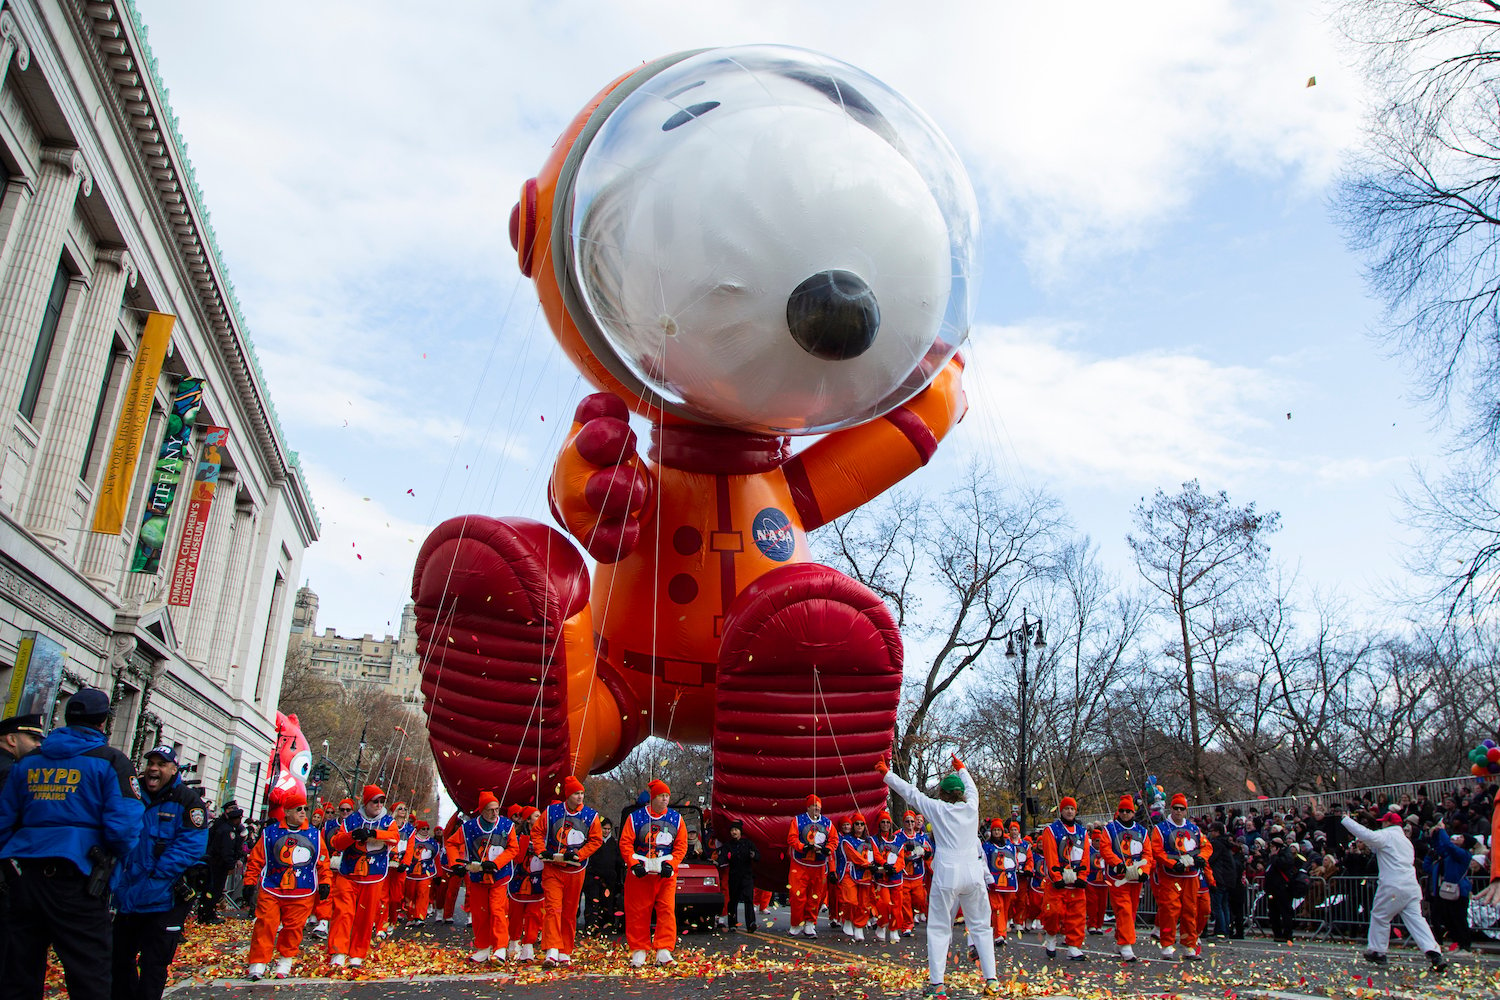 Astronaut Snoopy balloon